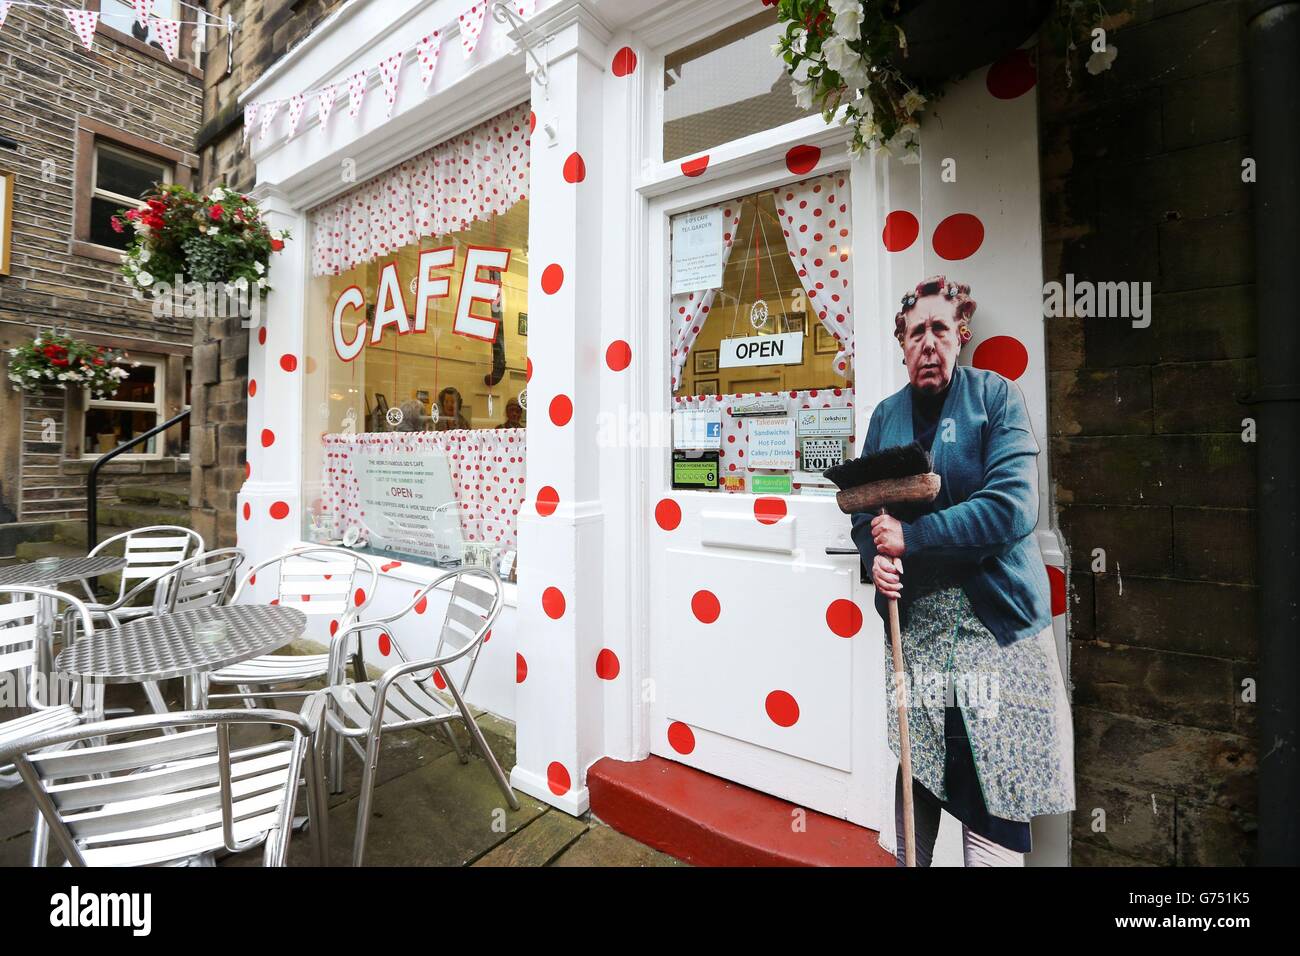 Il SID's Cafe reso famoso dalla serie televisiva Last of the Summer Wine è decorato come parte del percorso sulla seconda tappa del Tour de France. Foto Stock